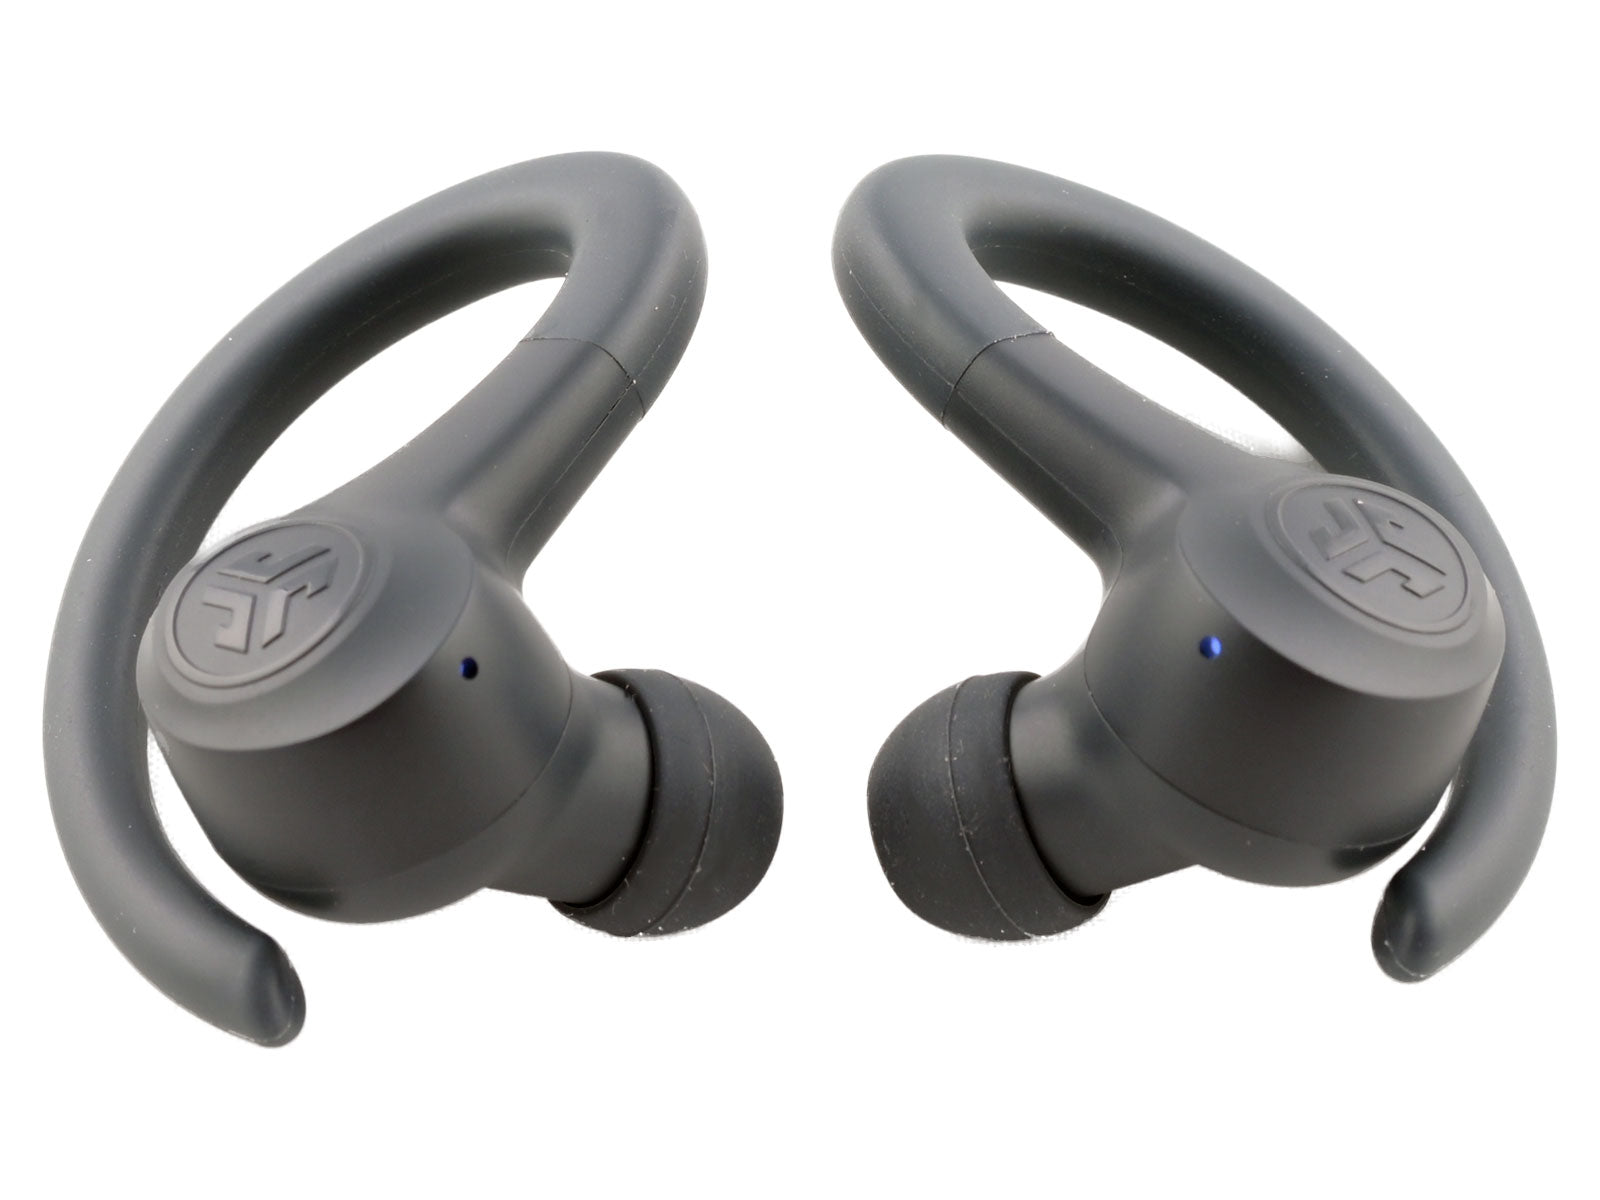 JLab GO Air Sport True Wireless Earbuds In-Ear Kopfhörer Schwarze kabellose Ohrhörer mit Over-Ear-Haken werden nebeneinander auf weißem Hintergrund platziert. Jeder Ohrhörer verfügt über eine kleine blaue LED-Anzeigeleuchte und das JLab-Logo auf der Außenfläche.